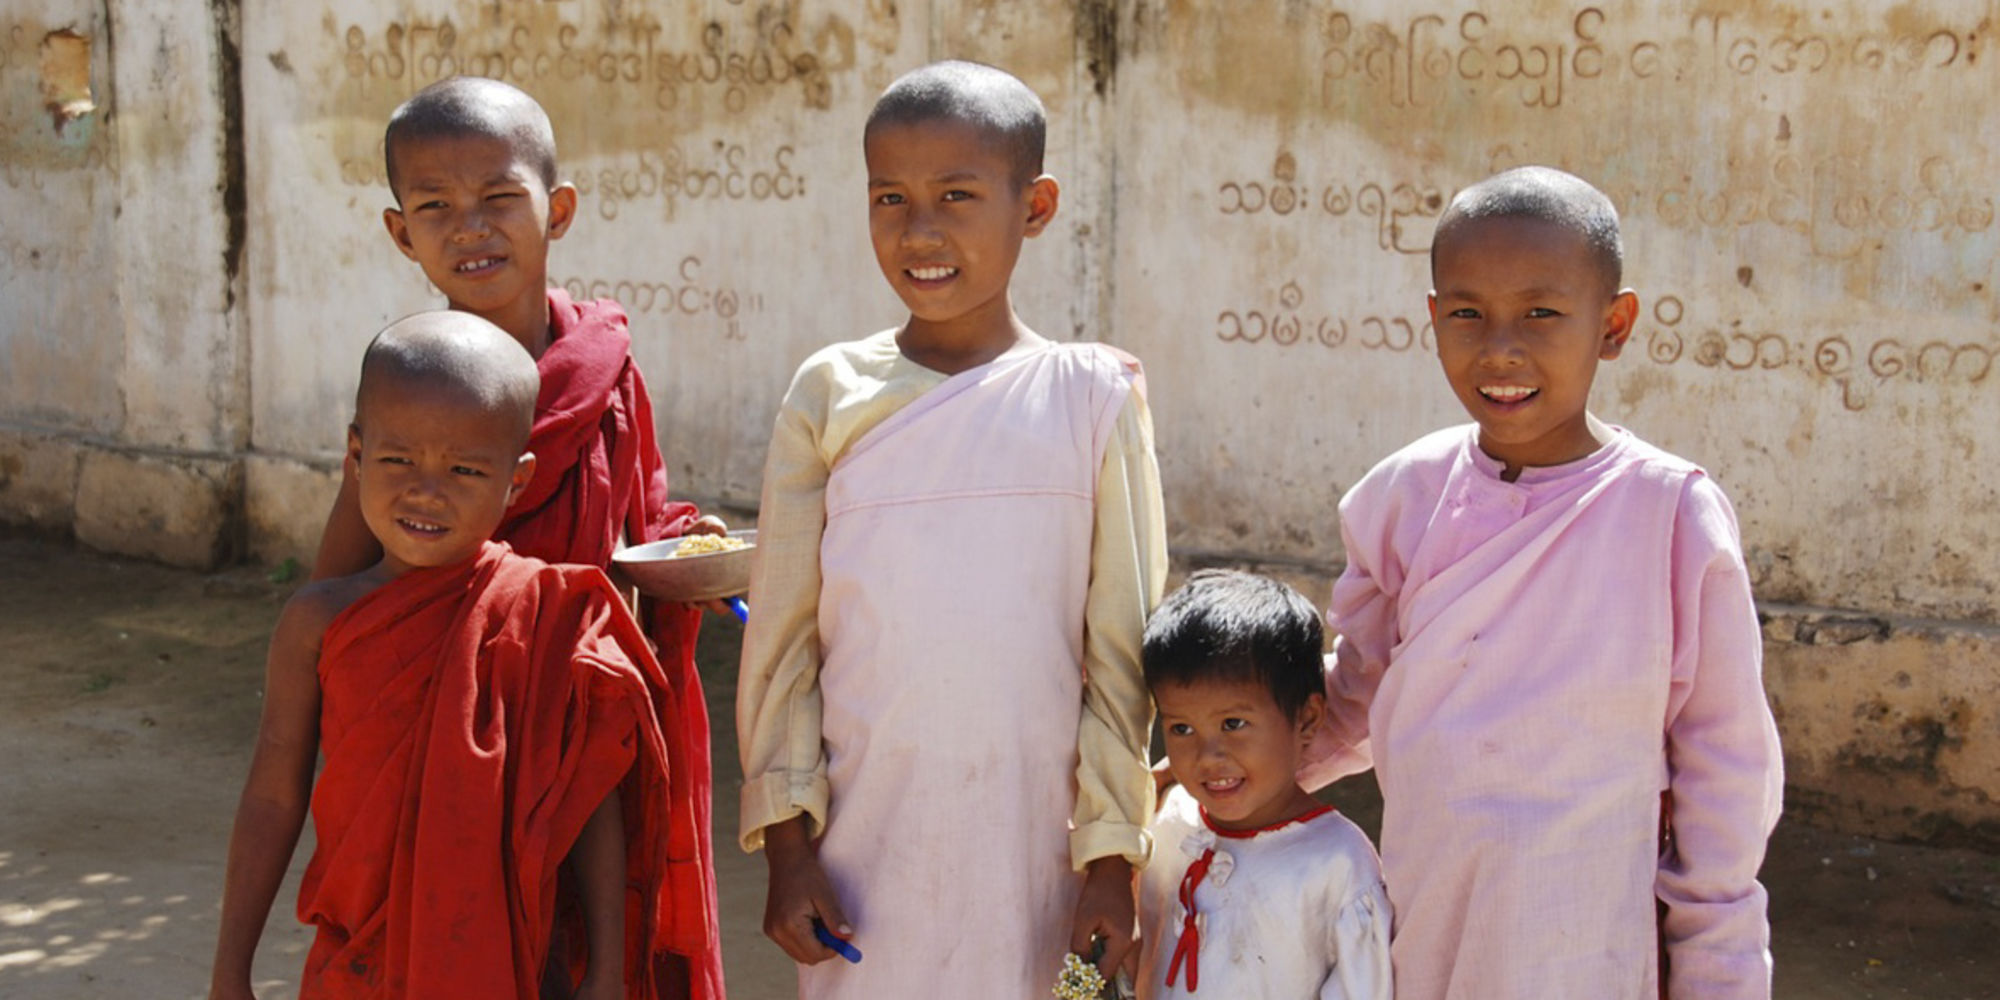 Freiwilligenarbeit in Burma, Freiwilligenarbeit in Myanmar, volunteering in Burma Myanmar